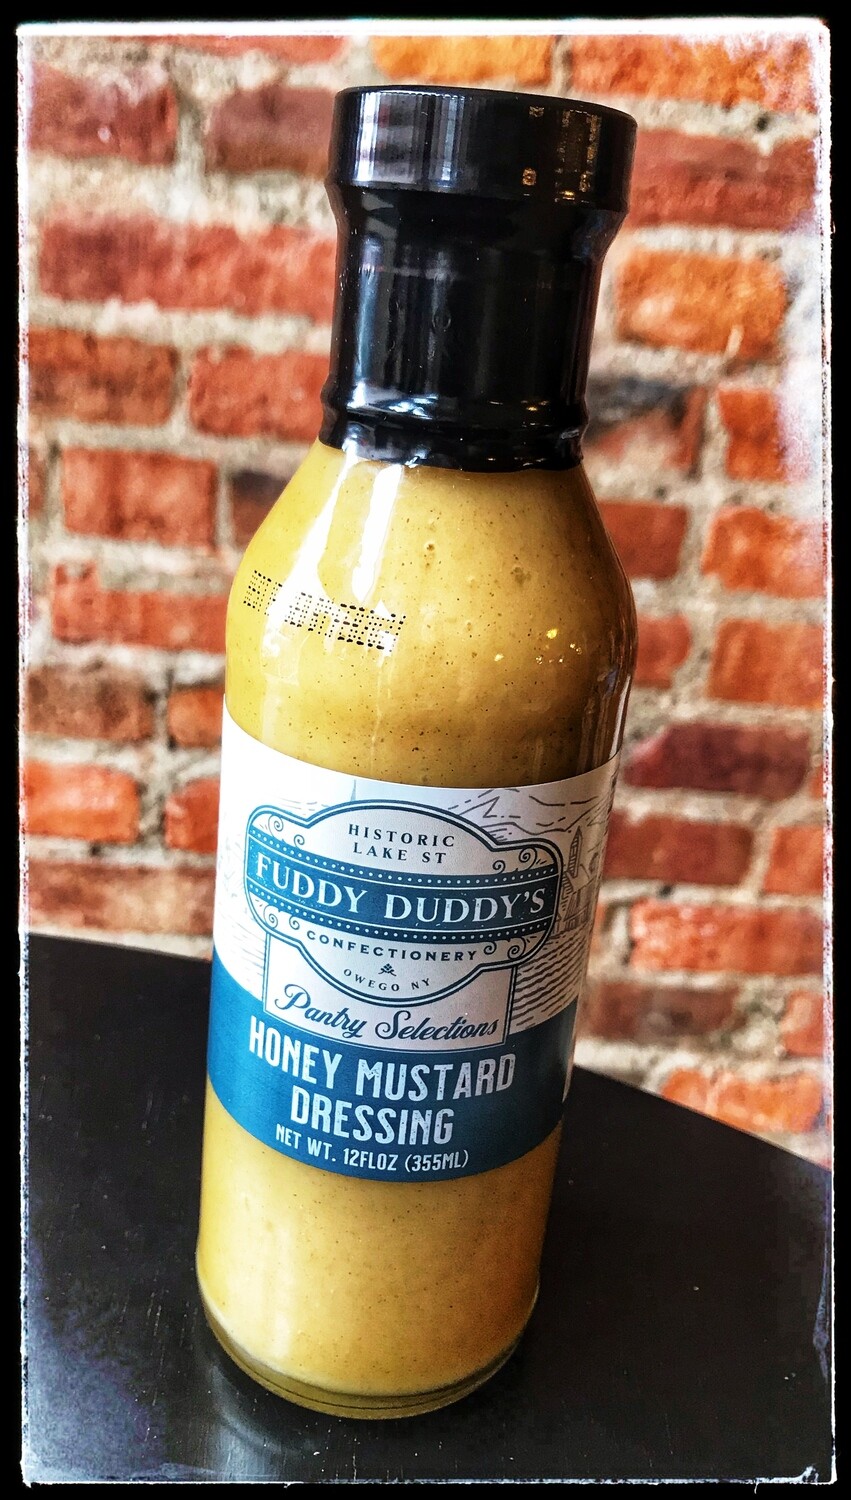 Fuddy Duddy's Honey Mustard Dressing